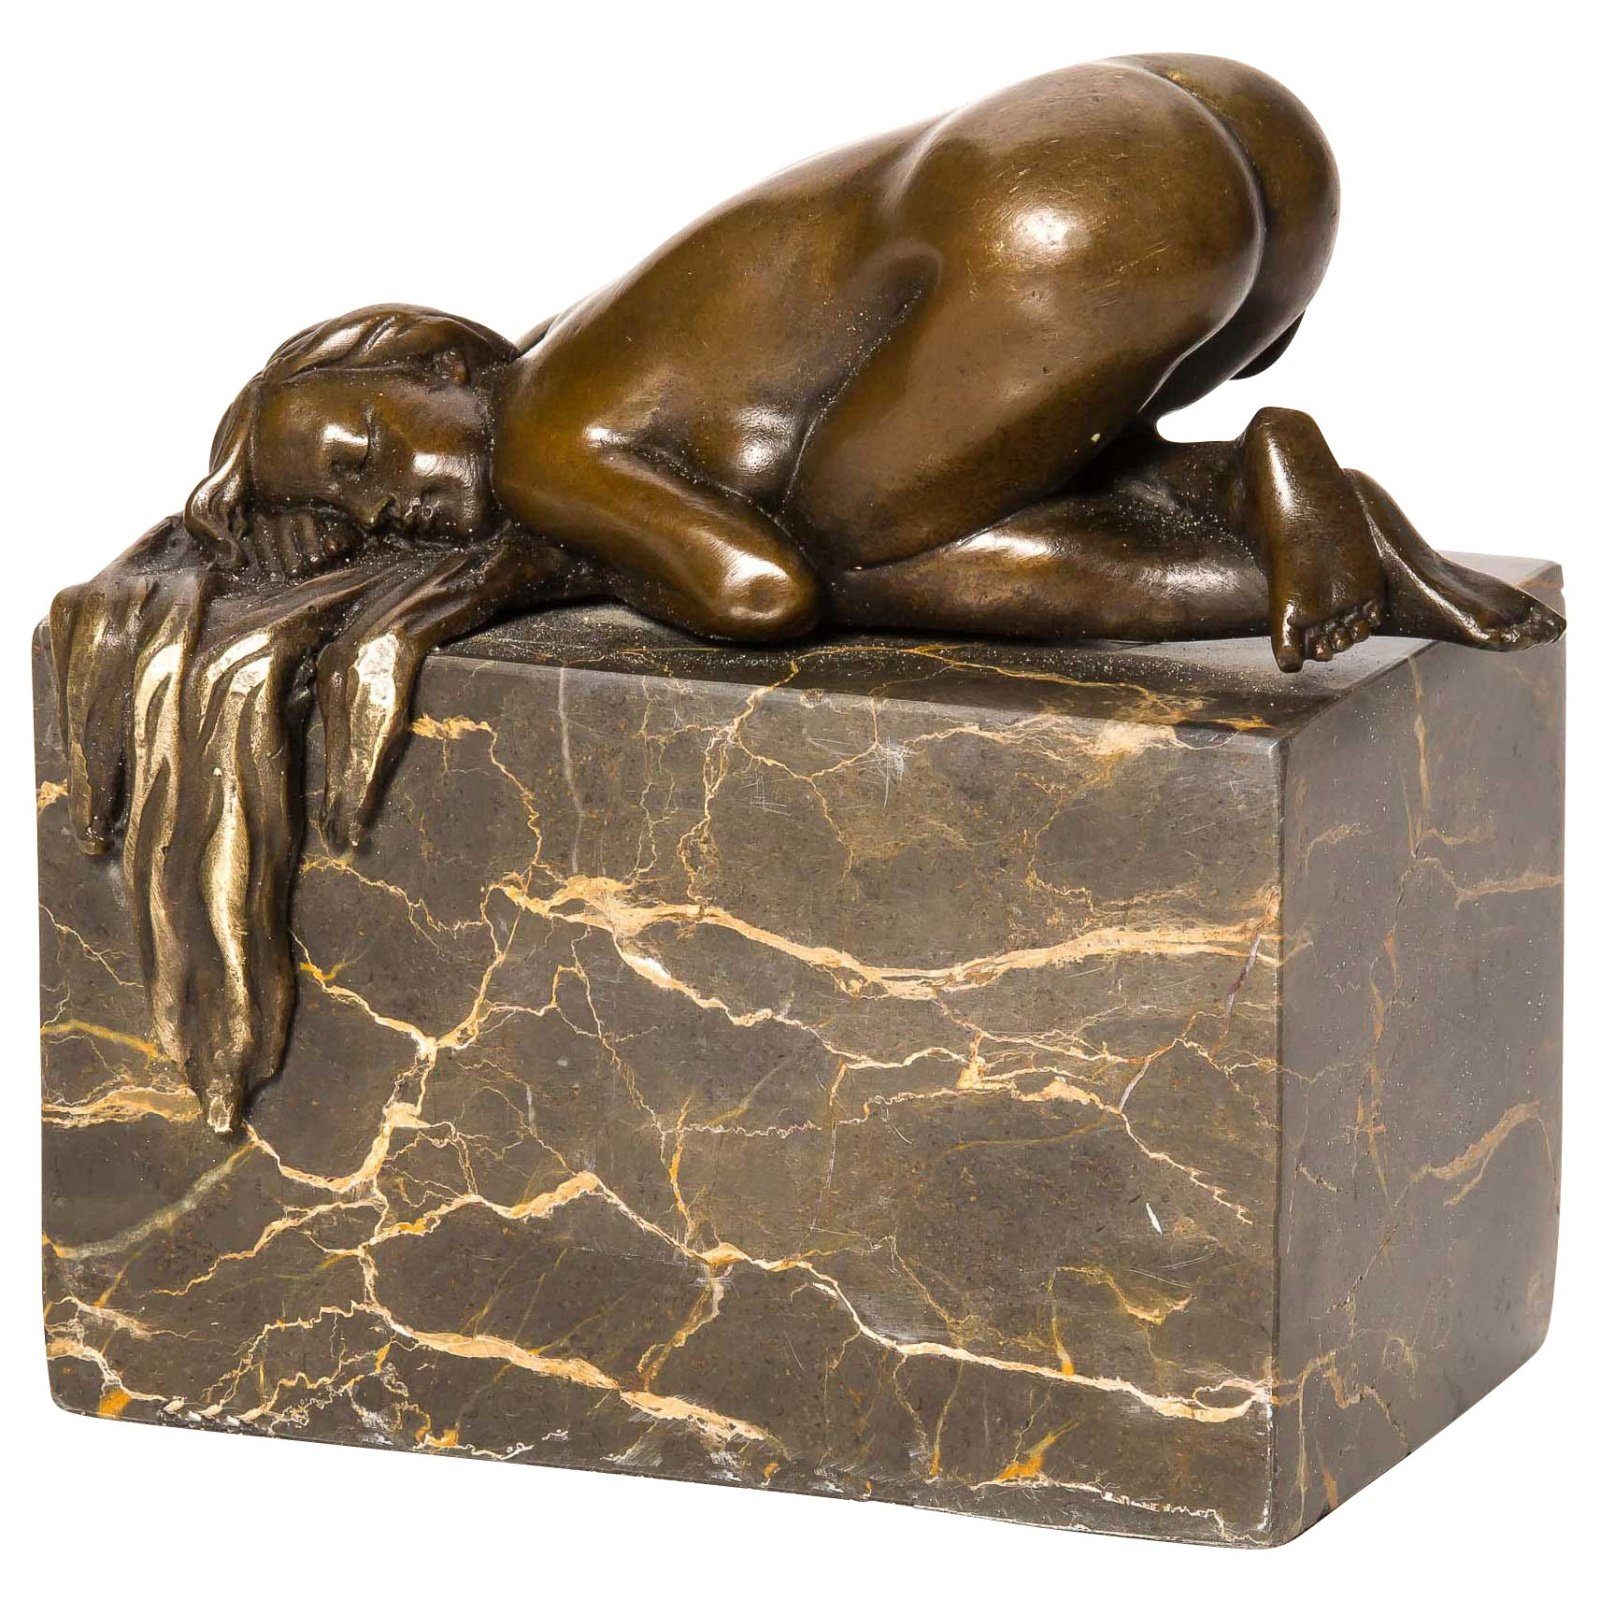 Aubaho Skulptur Bronzeskulptur Skulptur Frau Akt Erotik Nude Bronzefigur Bronze Figur